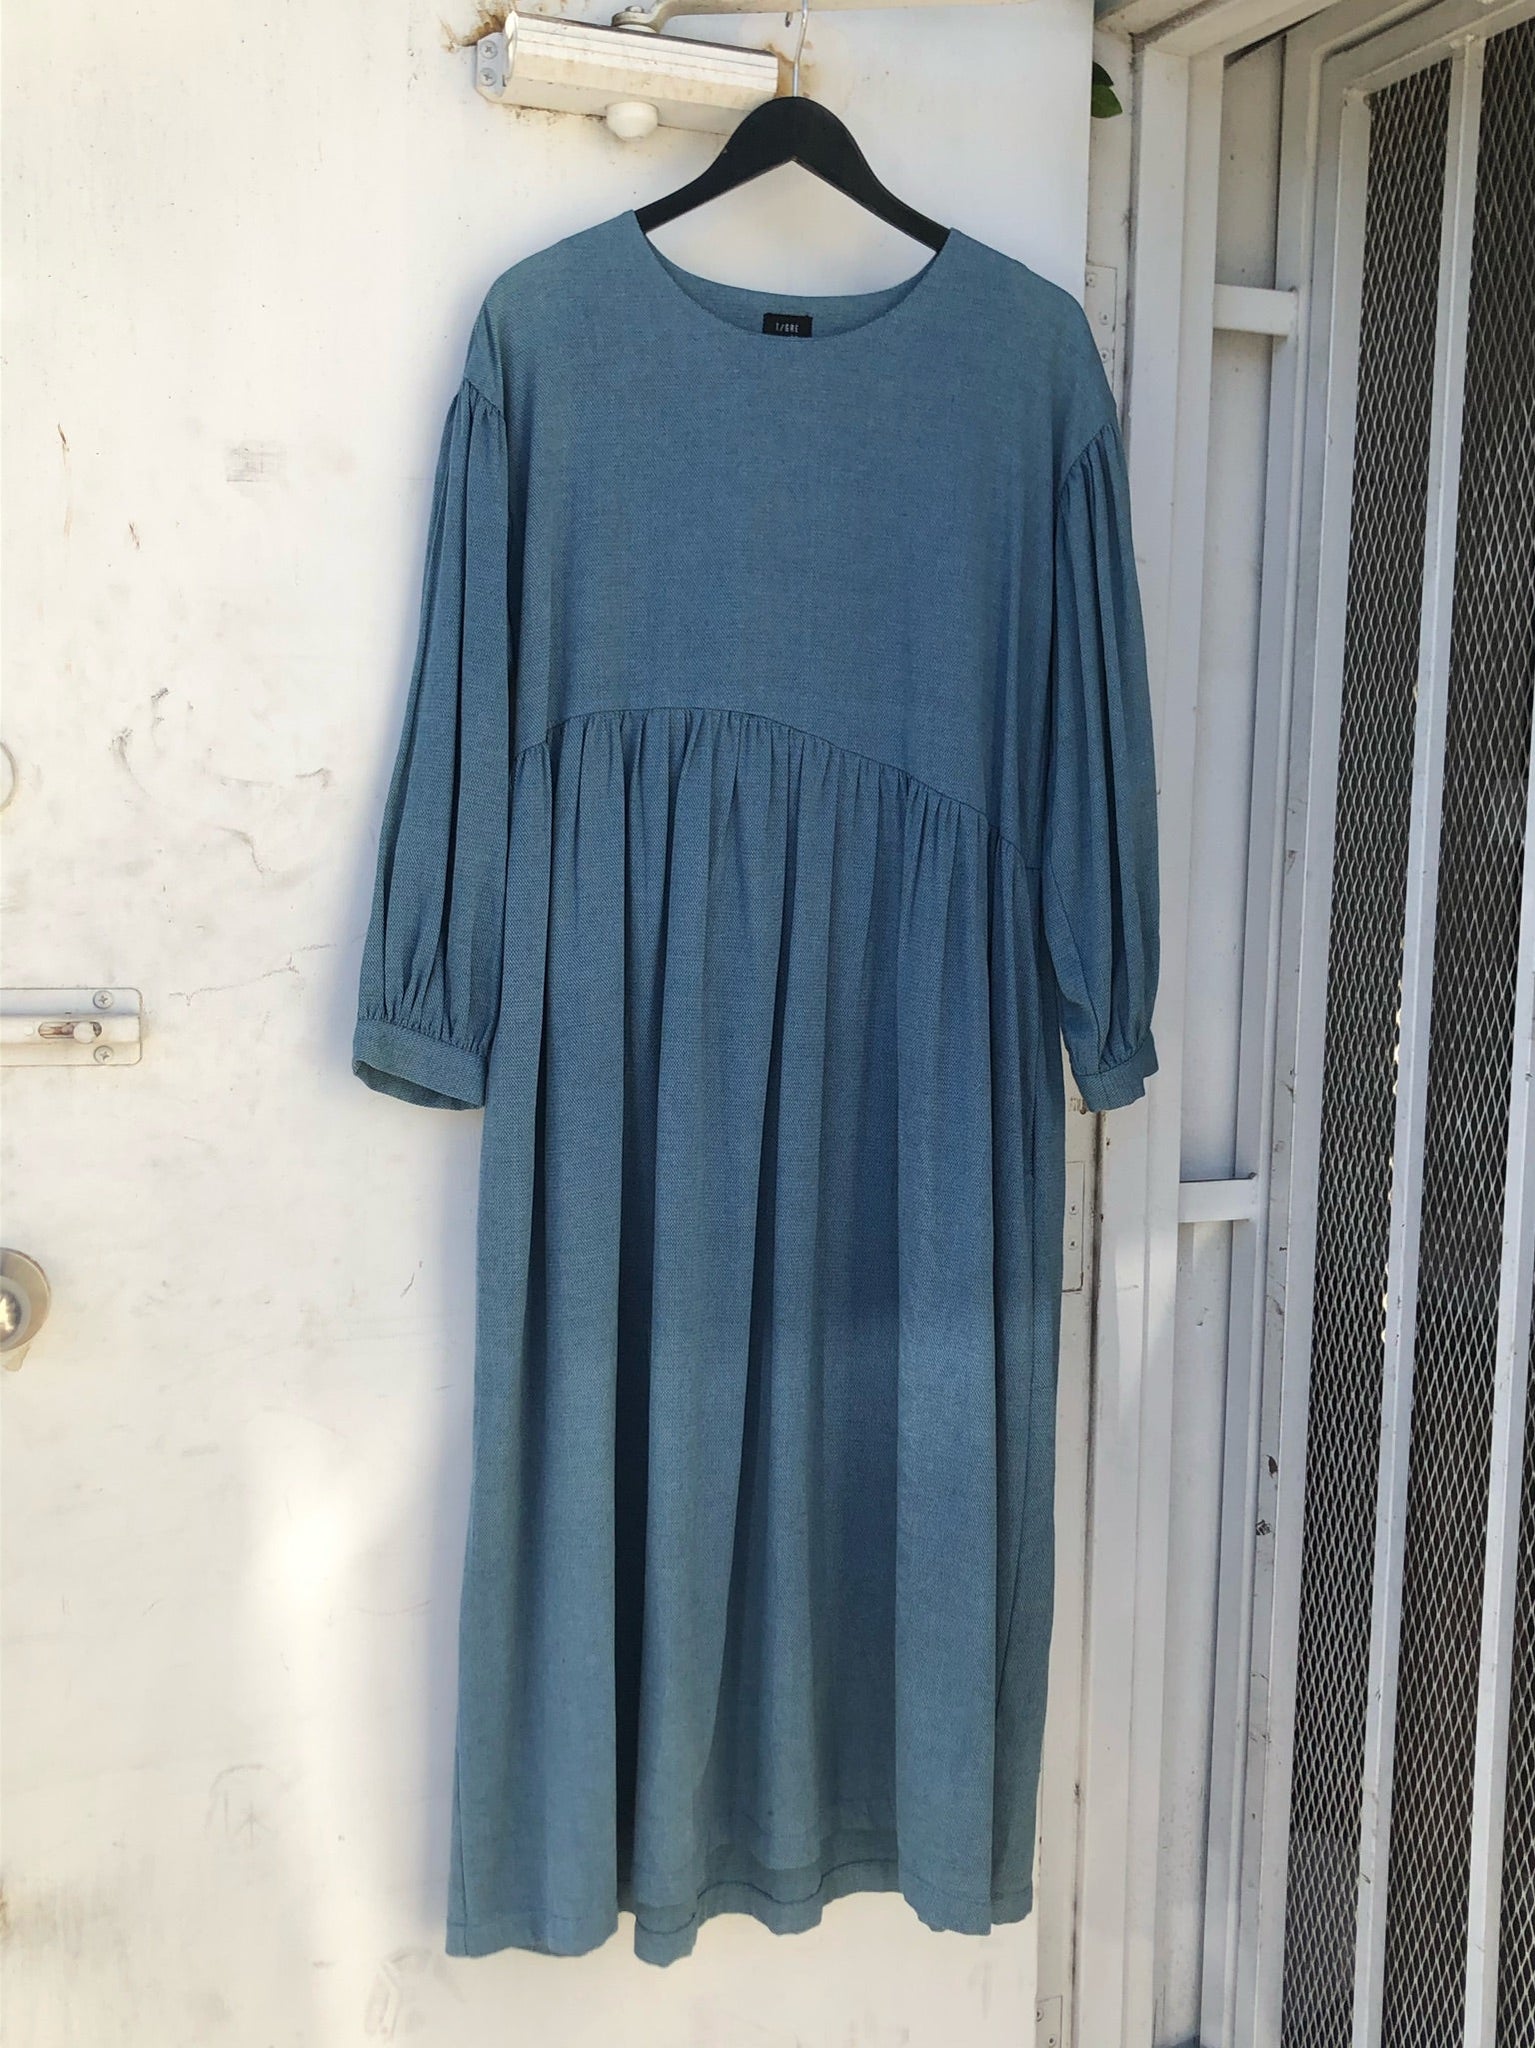 Jayme Dress in Denim Poplin - Size XS/S